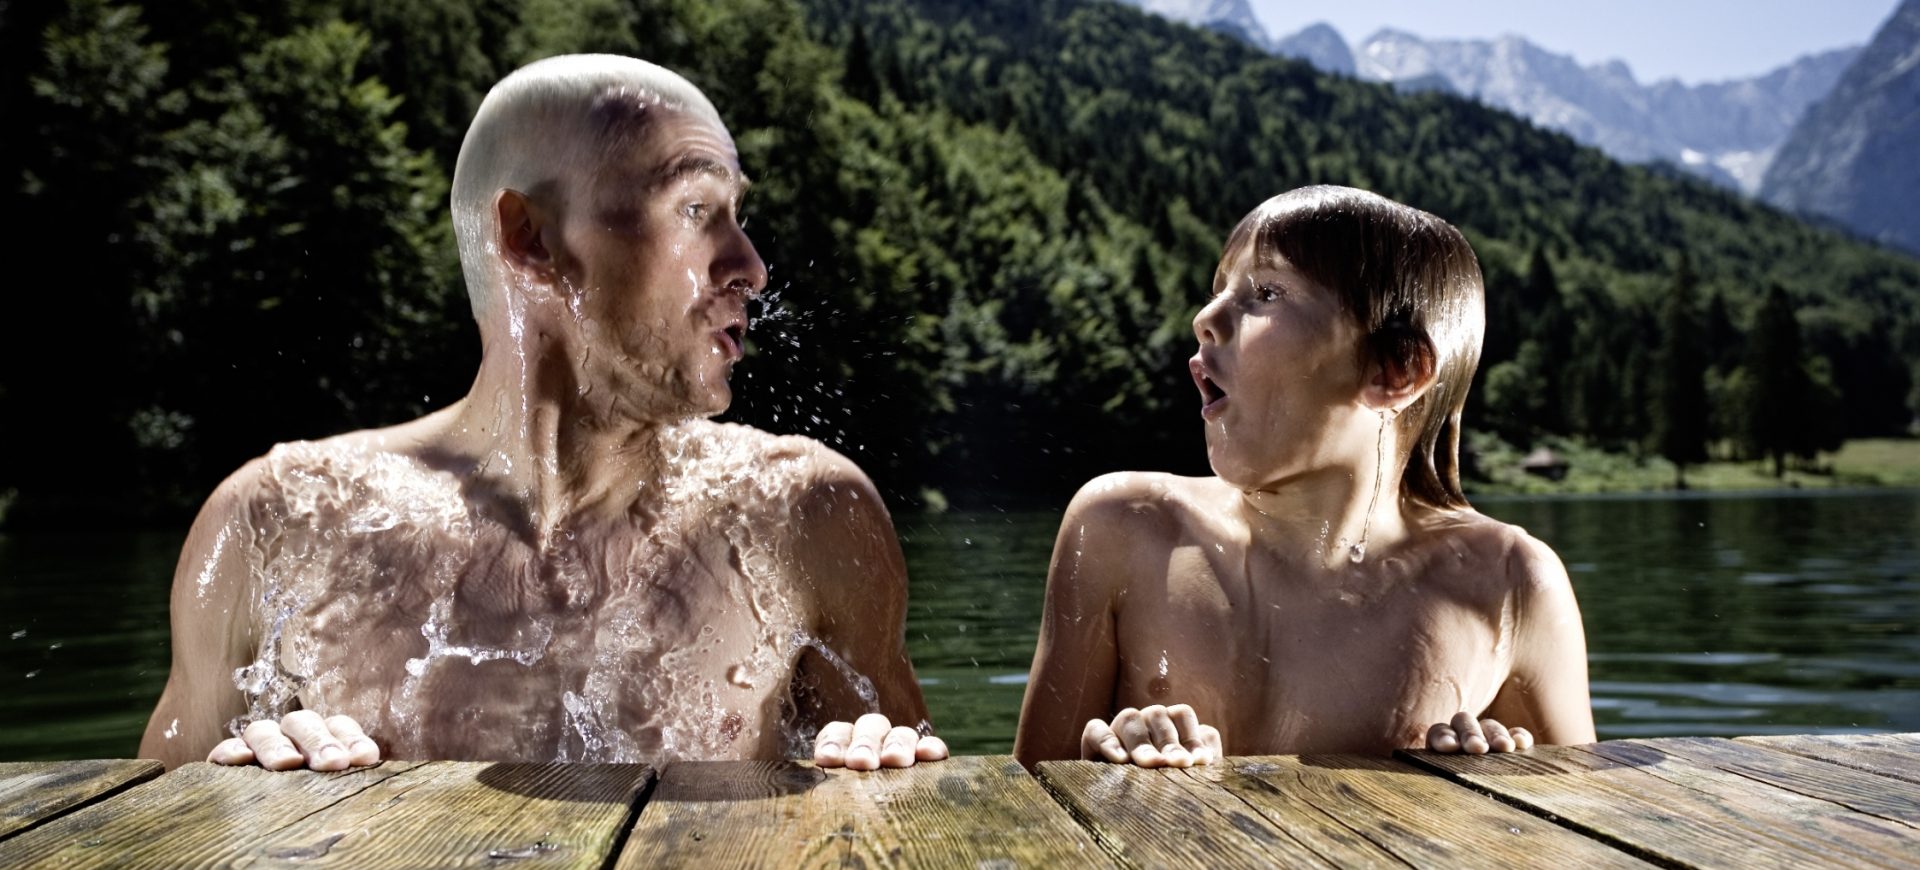 Badespaß im Sommer Familienurlaub Garmisch-Partenkirchen Copyright GaPa Tourismus GmbH